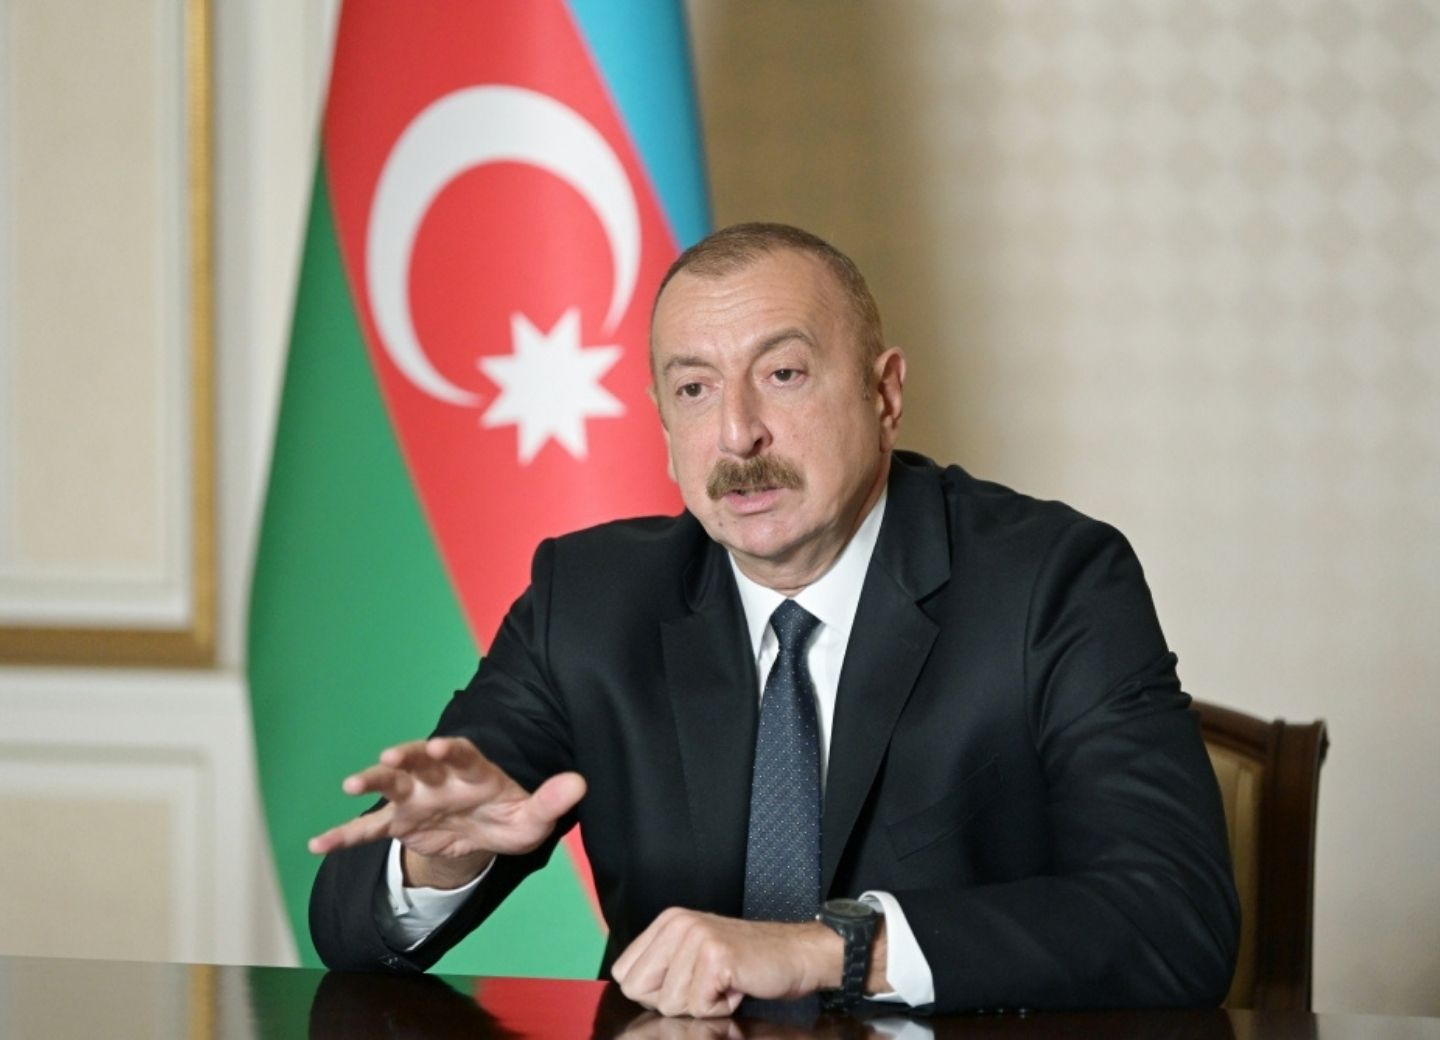 «Культурная столица, а не столица чиновников». Ильхам Алиев сказал «нет» самоуправству при восстановлении освобожденных земель